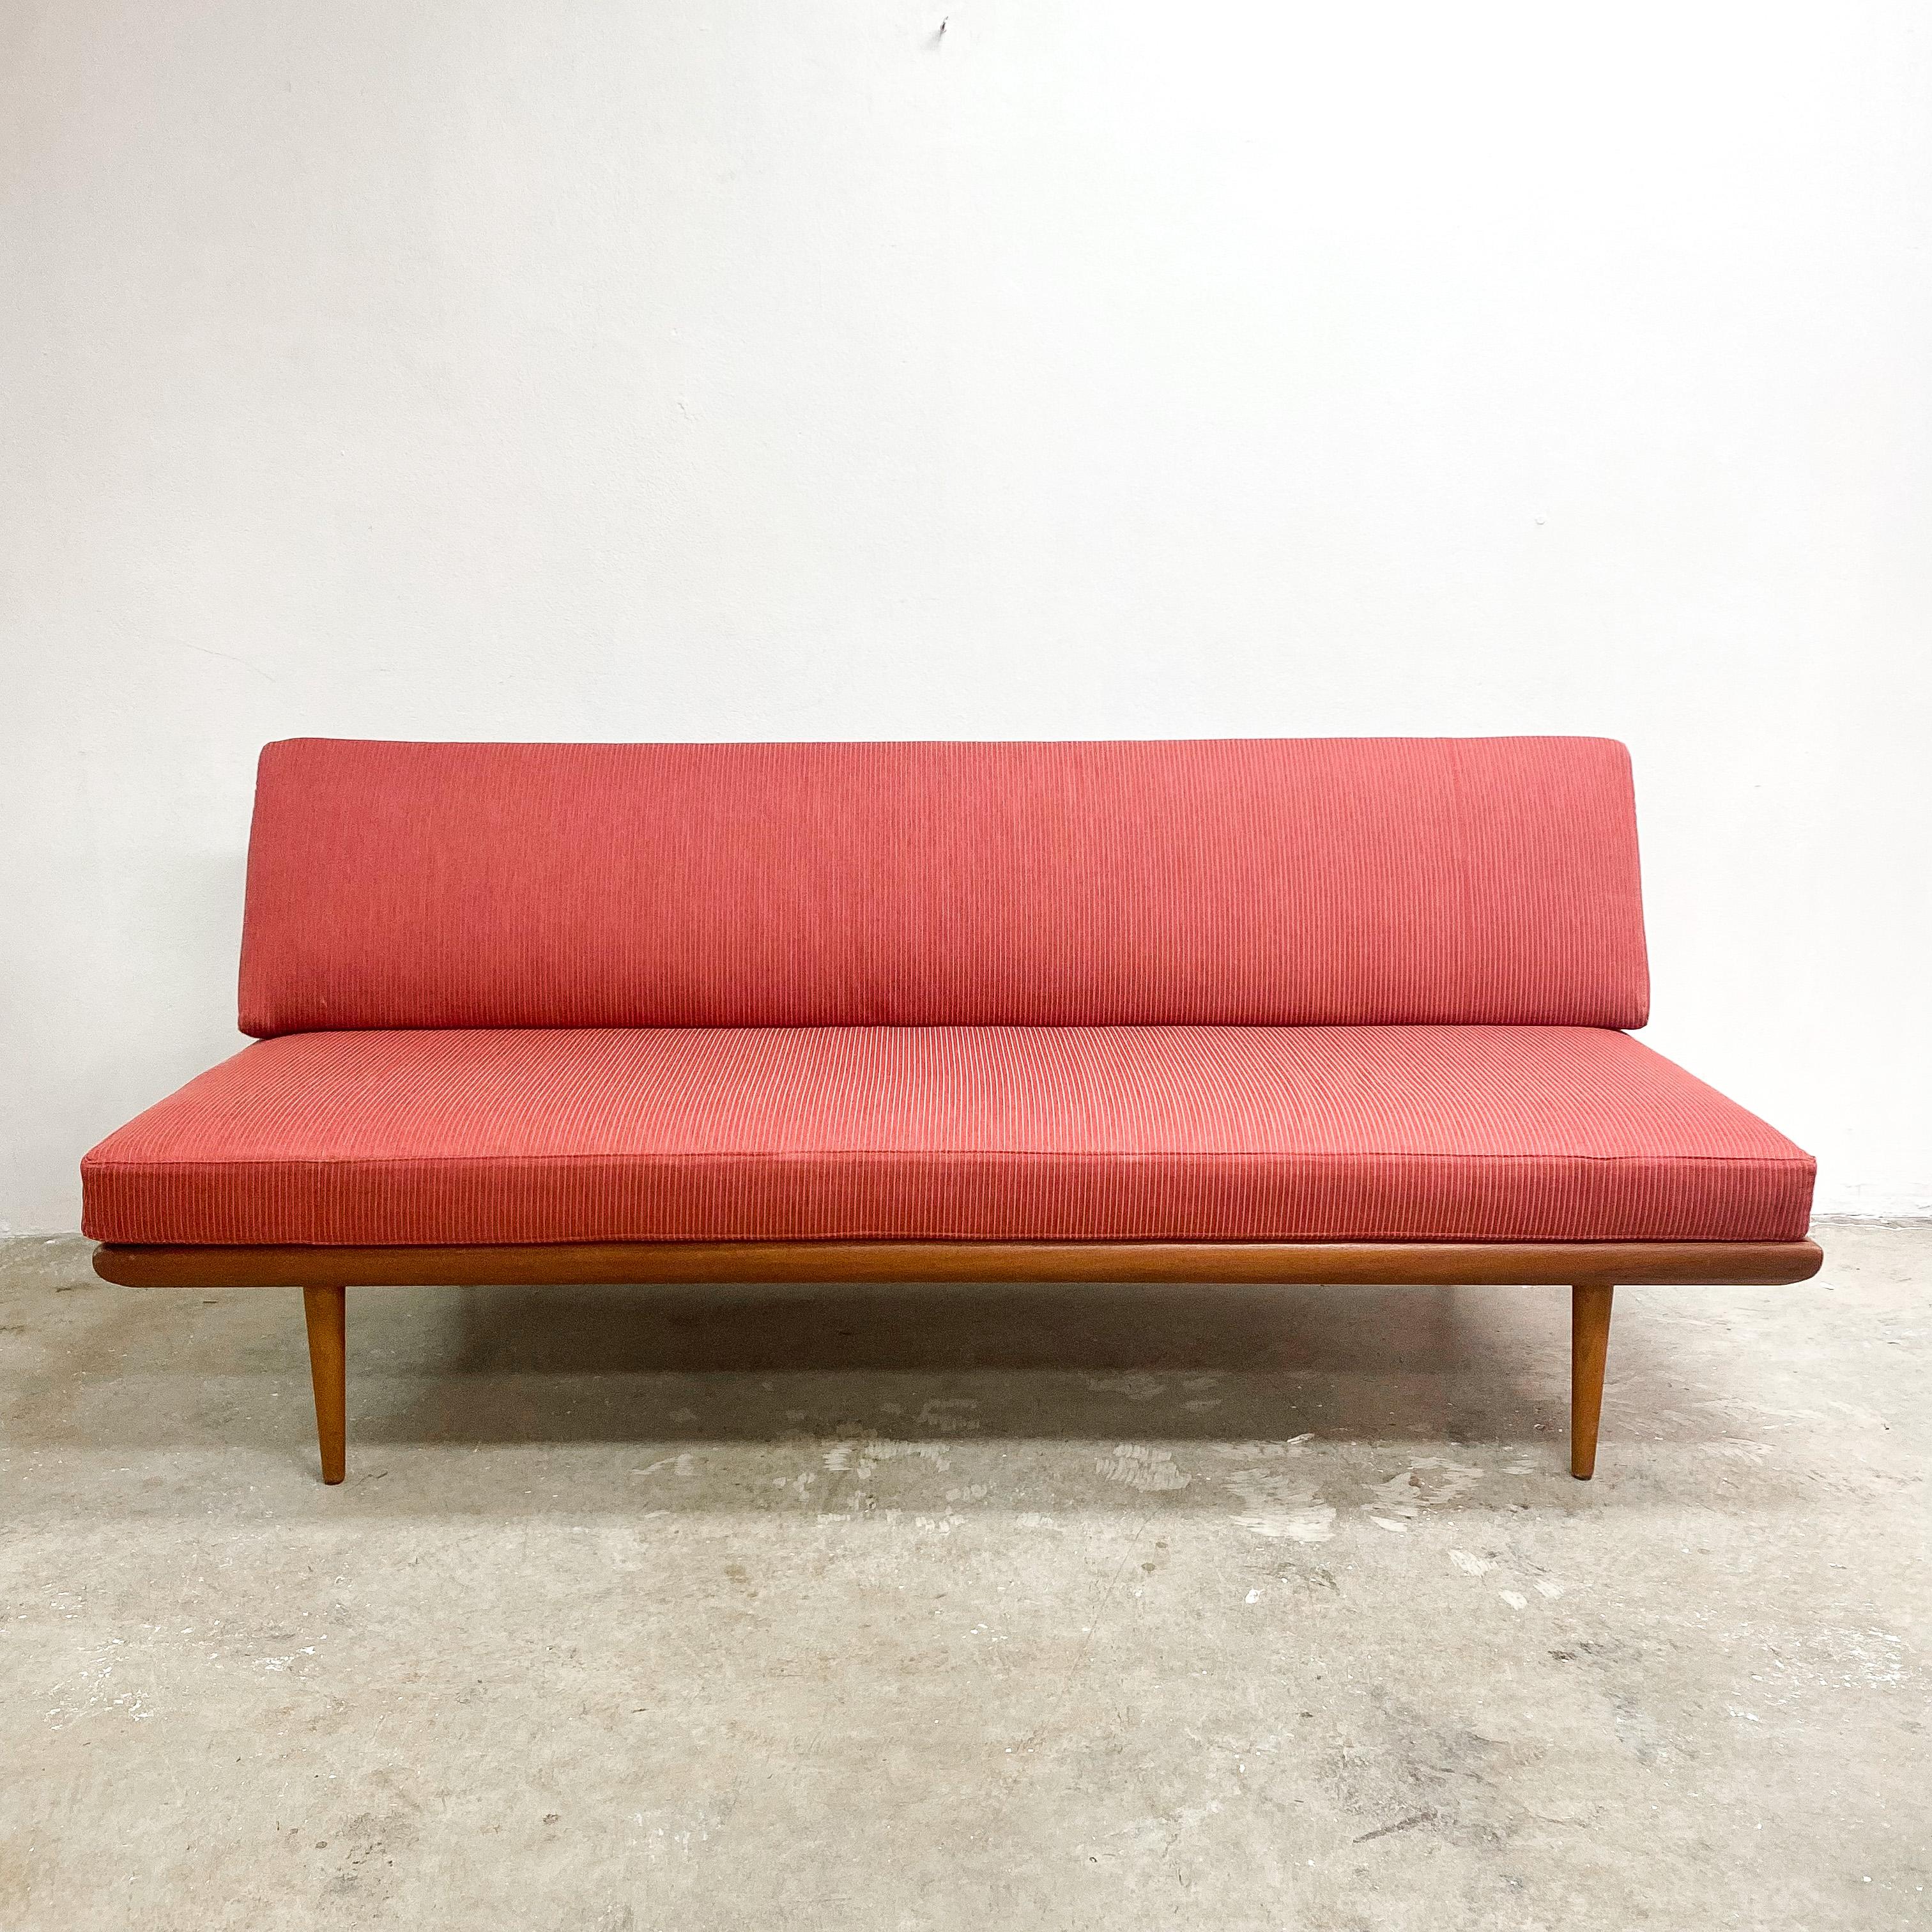 Dänische 'Minerva' Daybed Sofa Lounge Peter Hvidt & Orla Molgaard Nielsen für France and Sons. Dieser in den 1960er Jahren entworfene und produzierte Designklassiker ist nach dem Gott der Weisheit und der Kunst benannt.
Der Zustand ist sehr gut, er